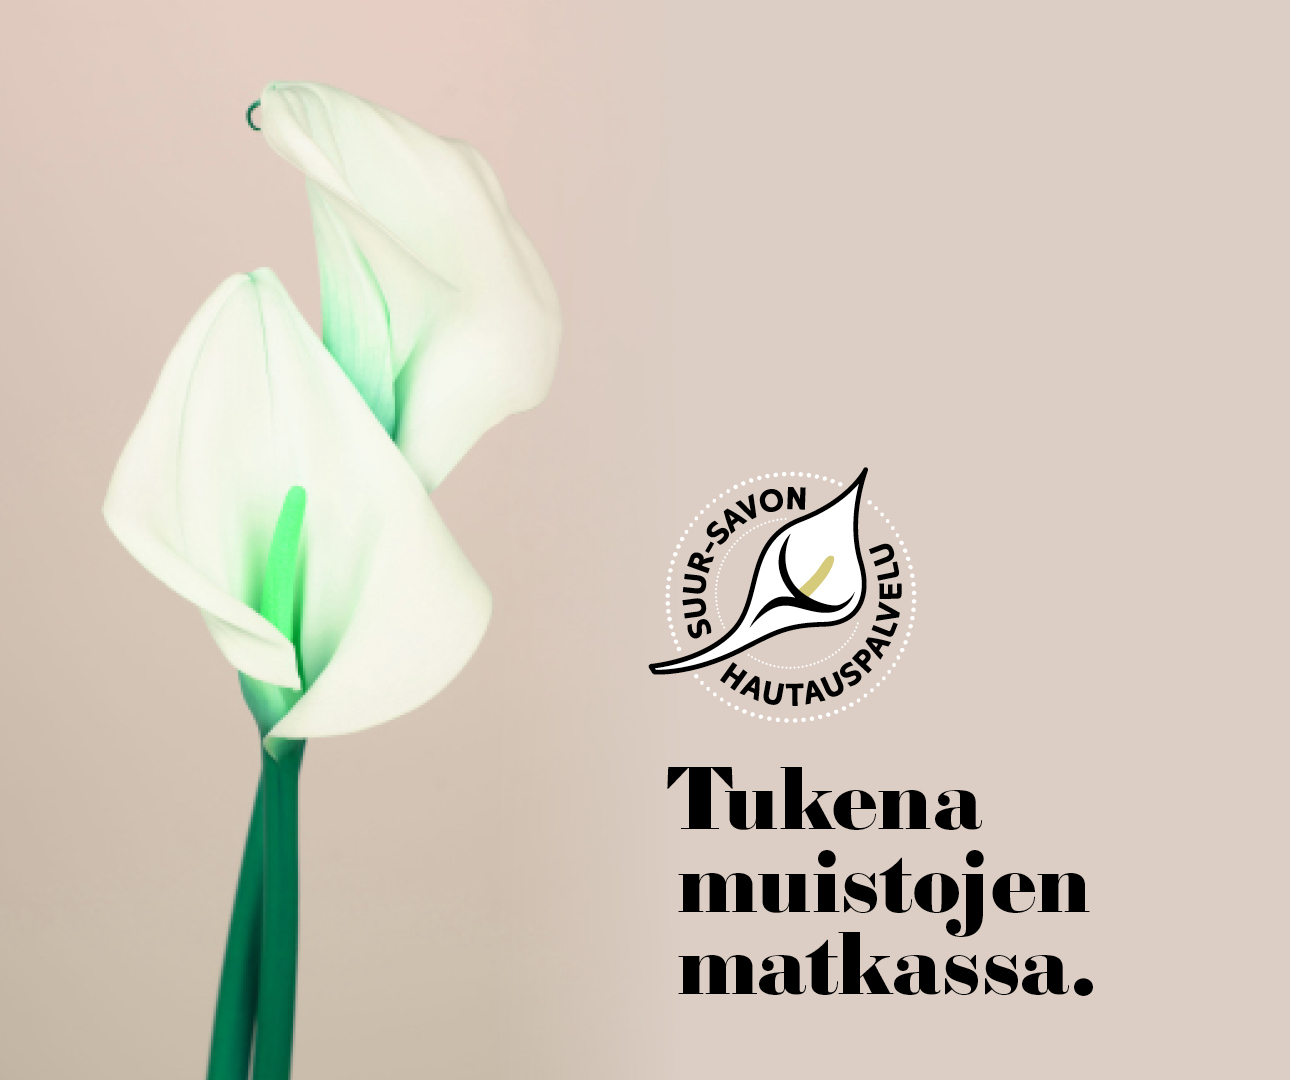 Suur-Savon Hautauspalvelun Logo ja visuaaliset elementit.